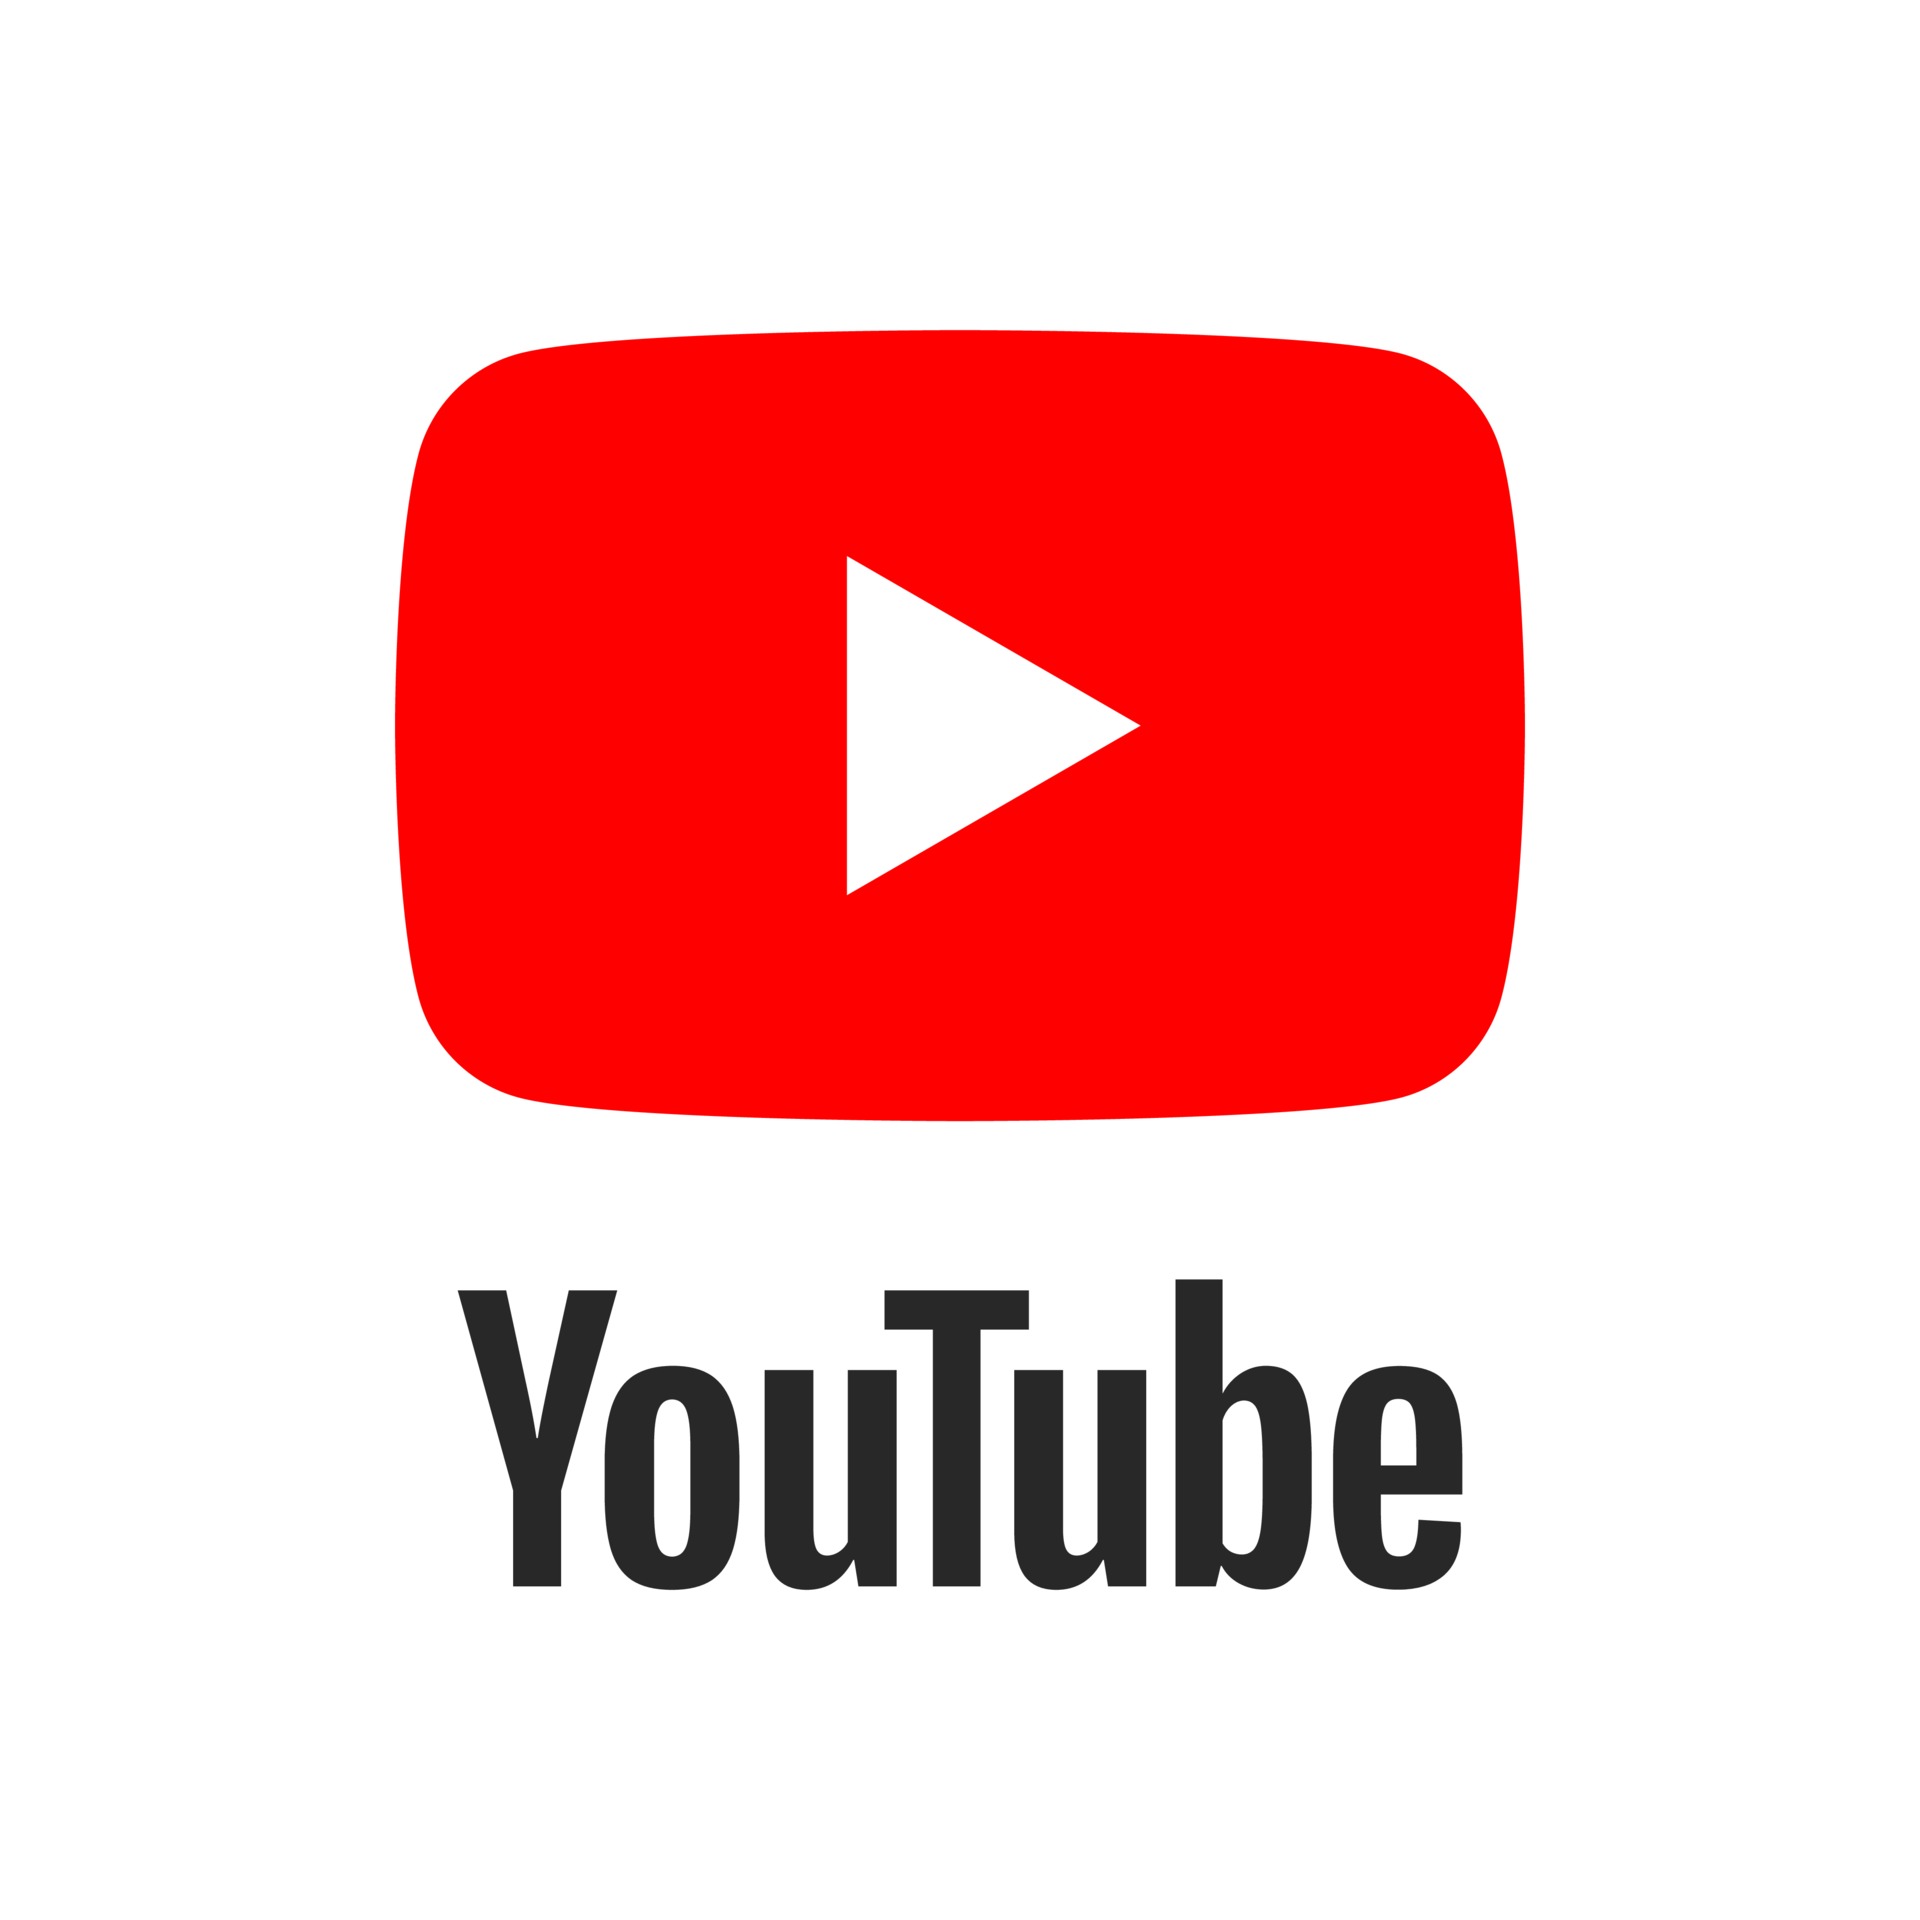 Youtube Vetores, Ícones e Planos de Fundo para Baixar Grátis